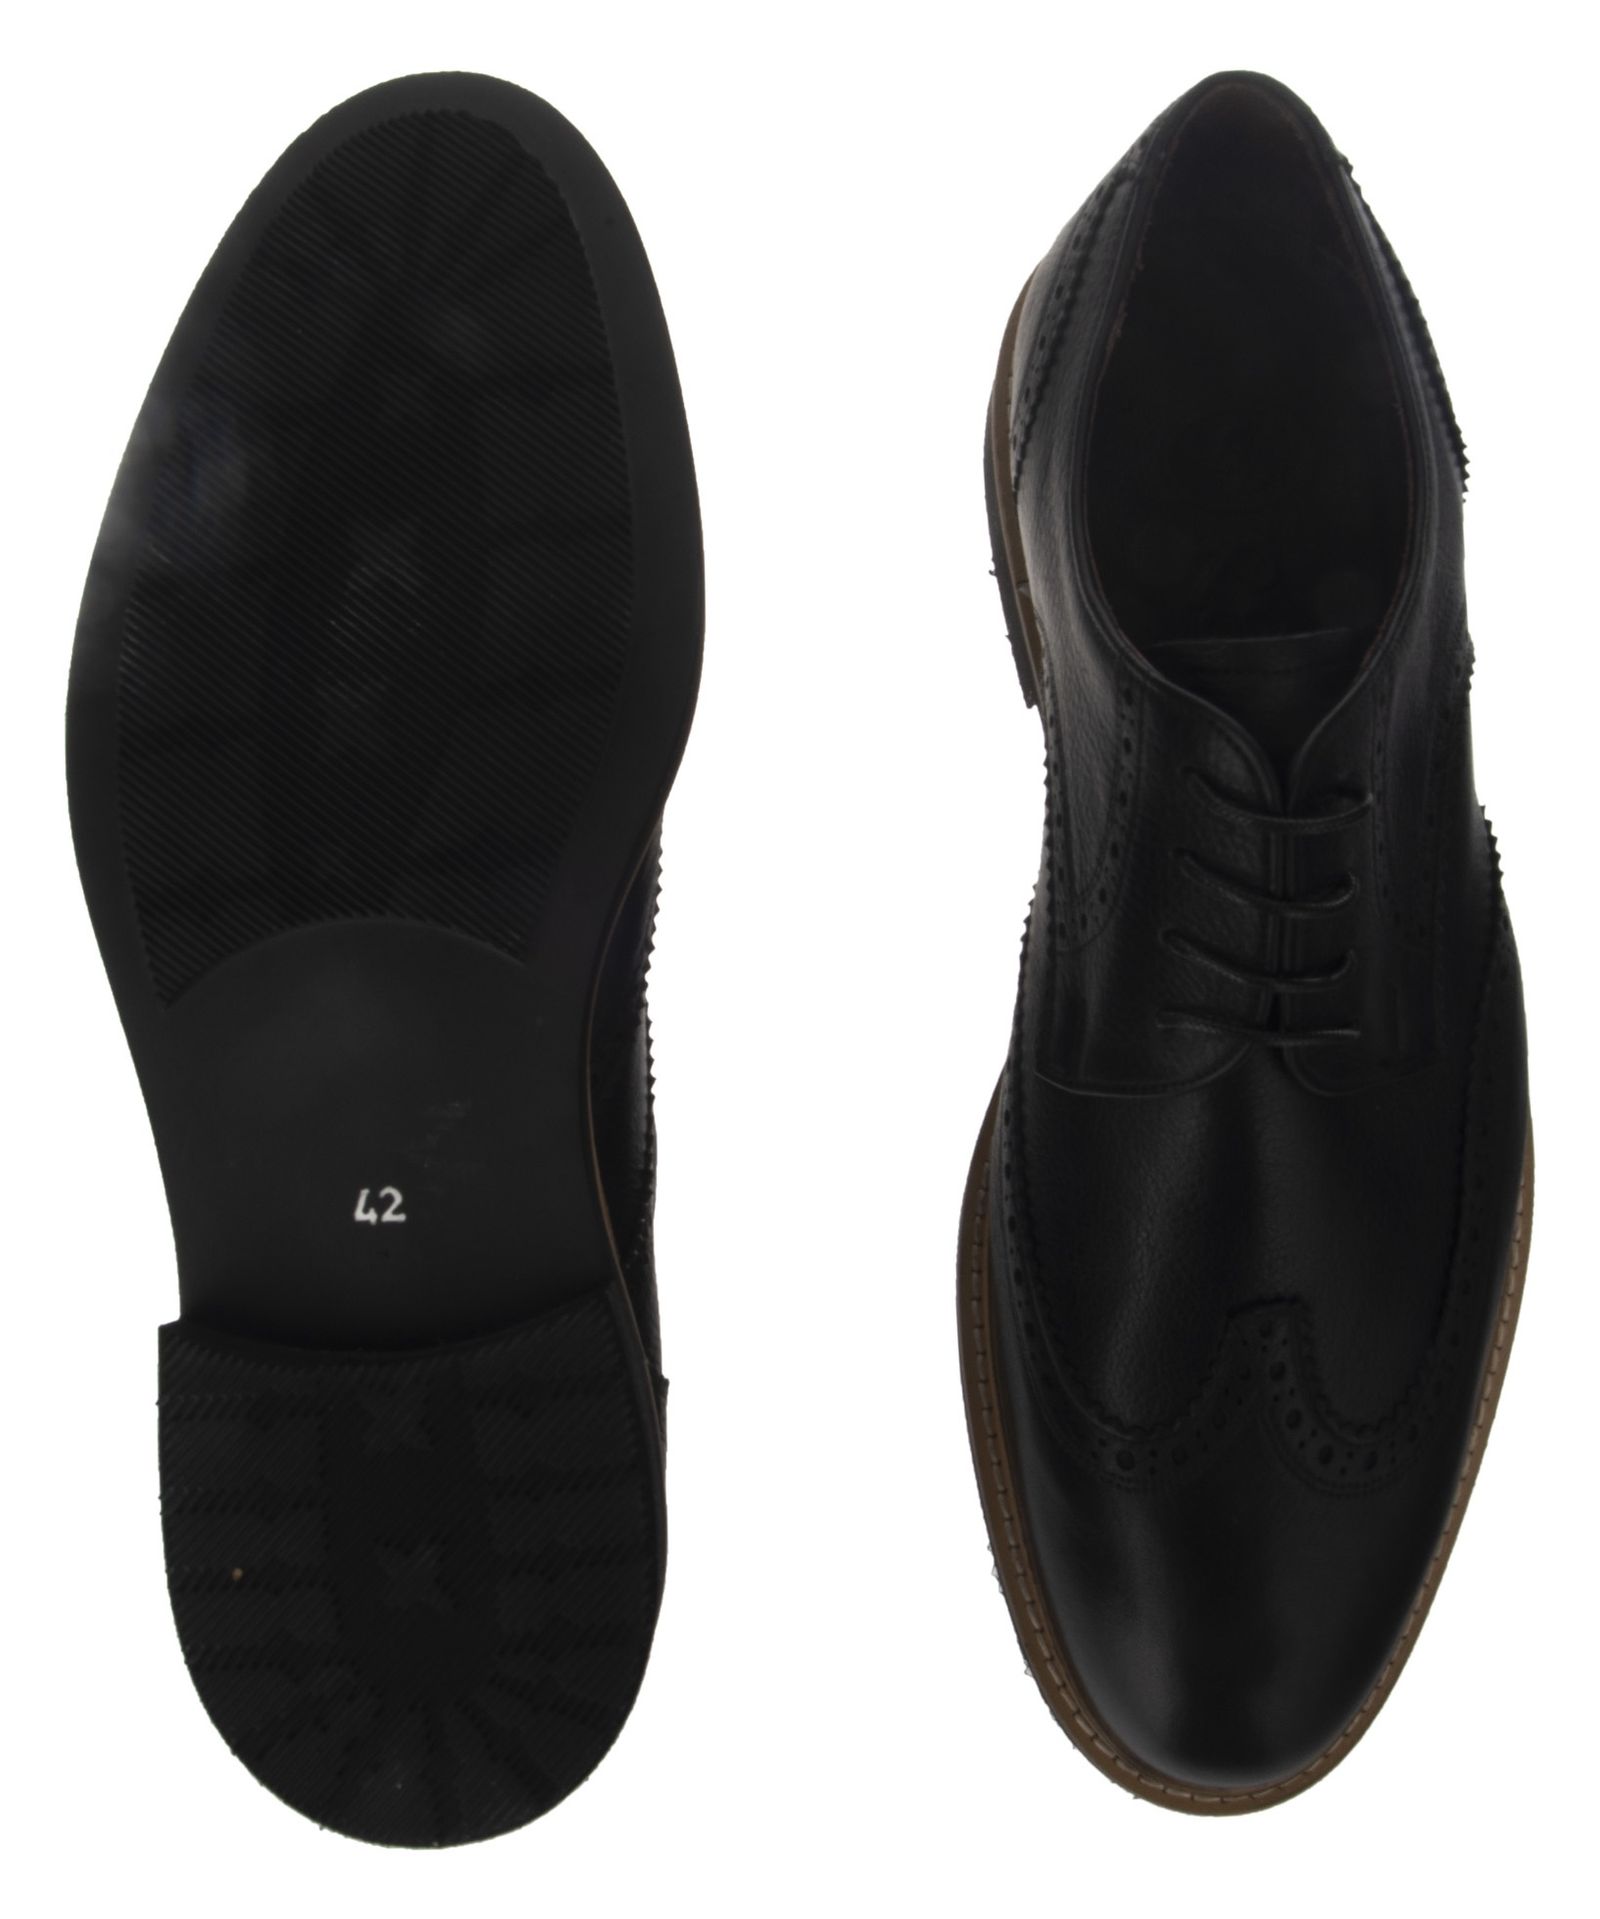 کفش مردانه اورسی مدل 915-27 - مشکی - 3